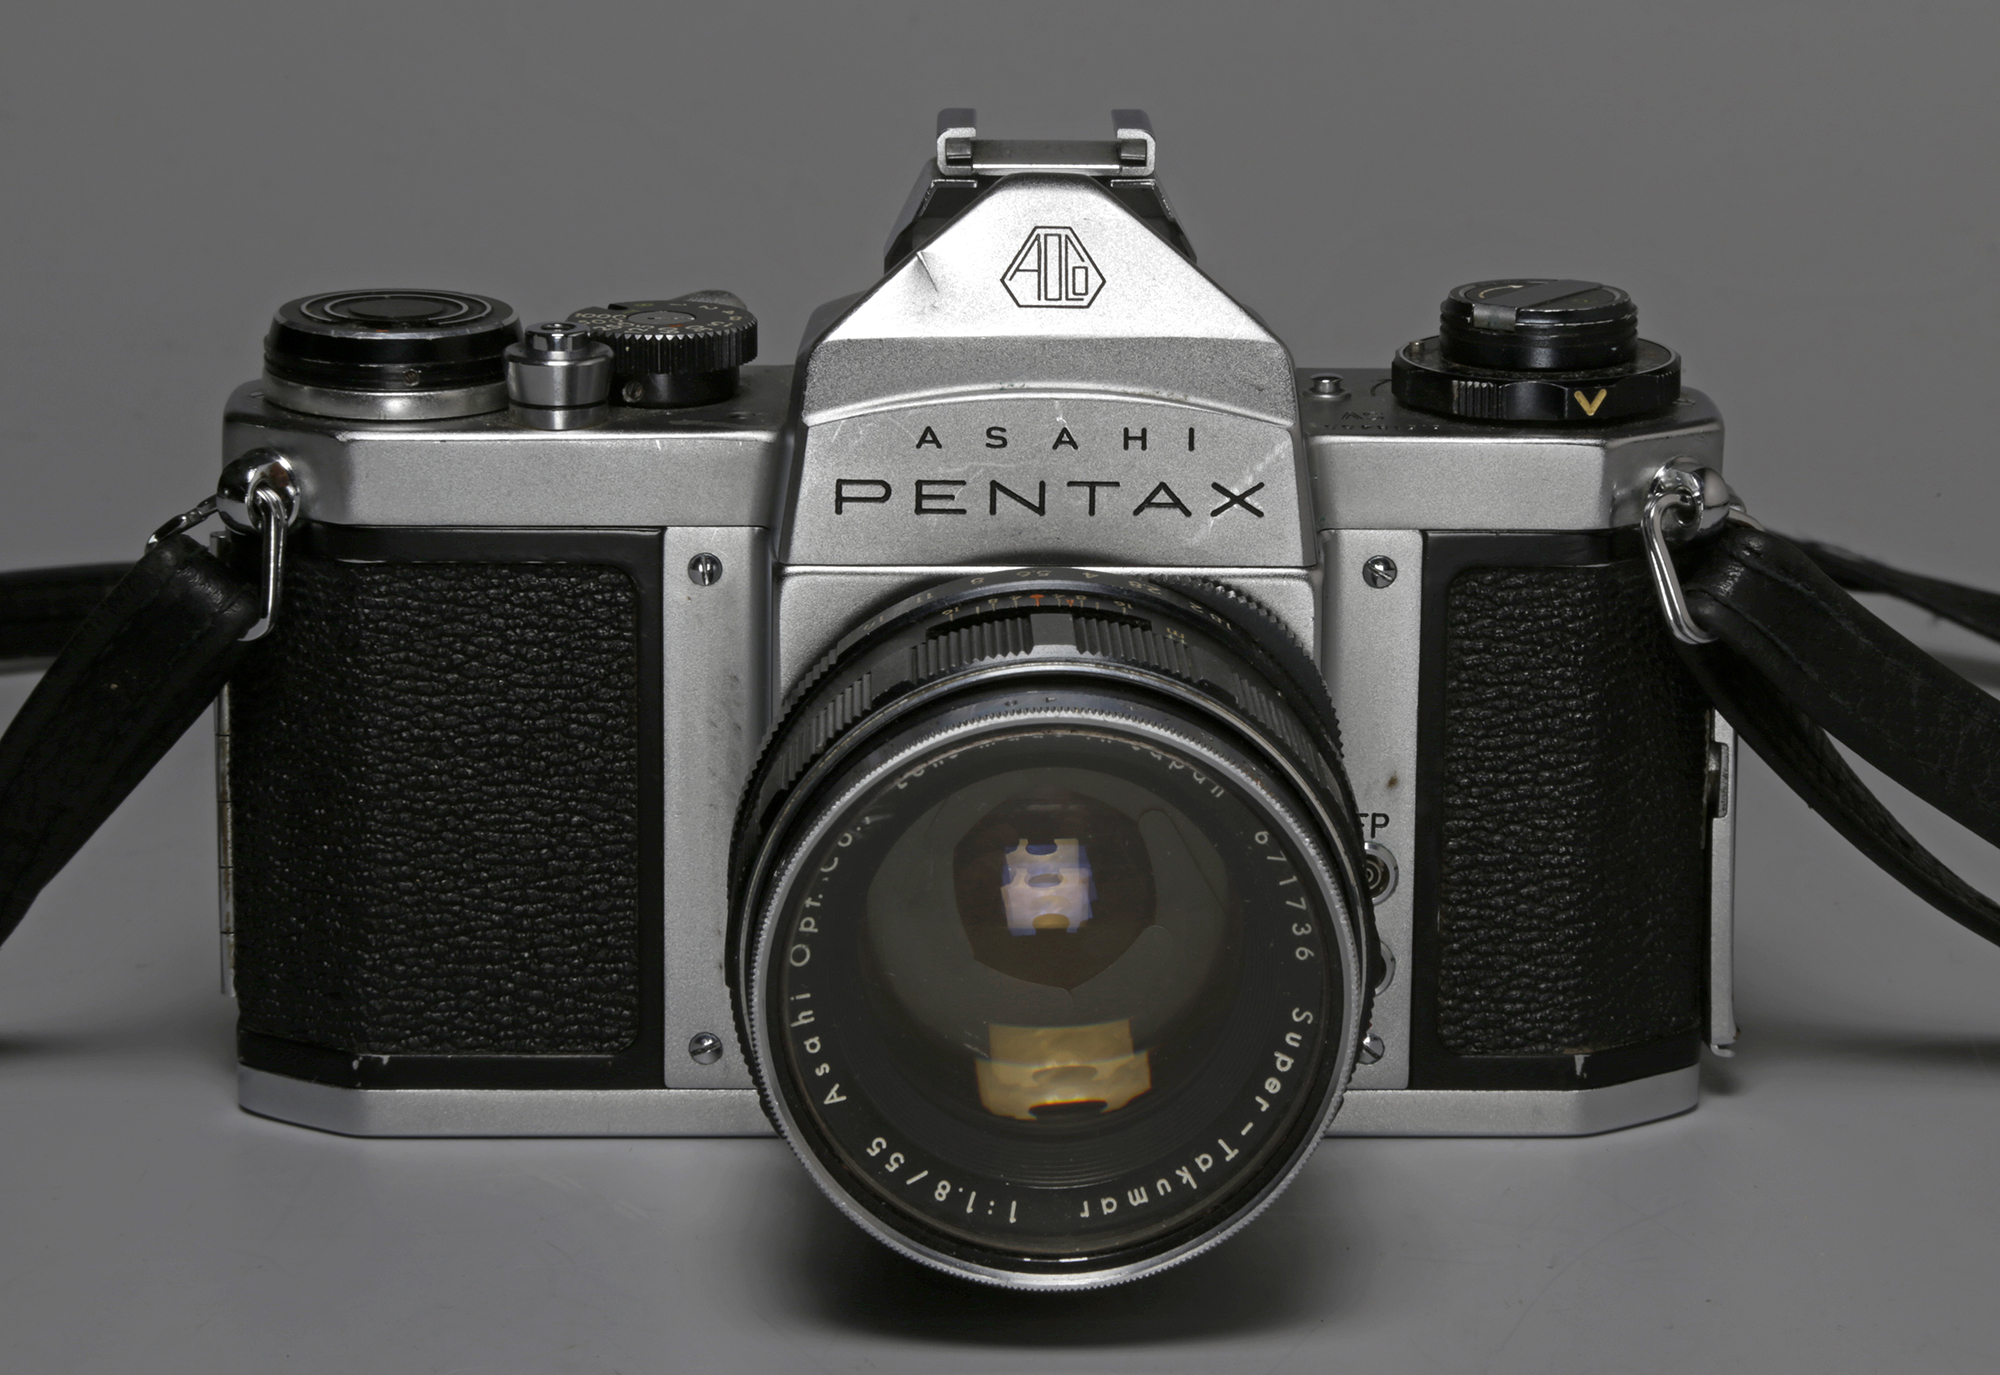 Appareil Asahi Pentax SV, équipé d’un objectif Asahi Pentax f/1.8 : 55mm. N° d'inventaire 18237, Collections du Musée suisse de l’appareil photographique, Vevey.